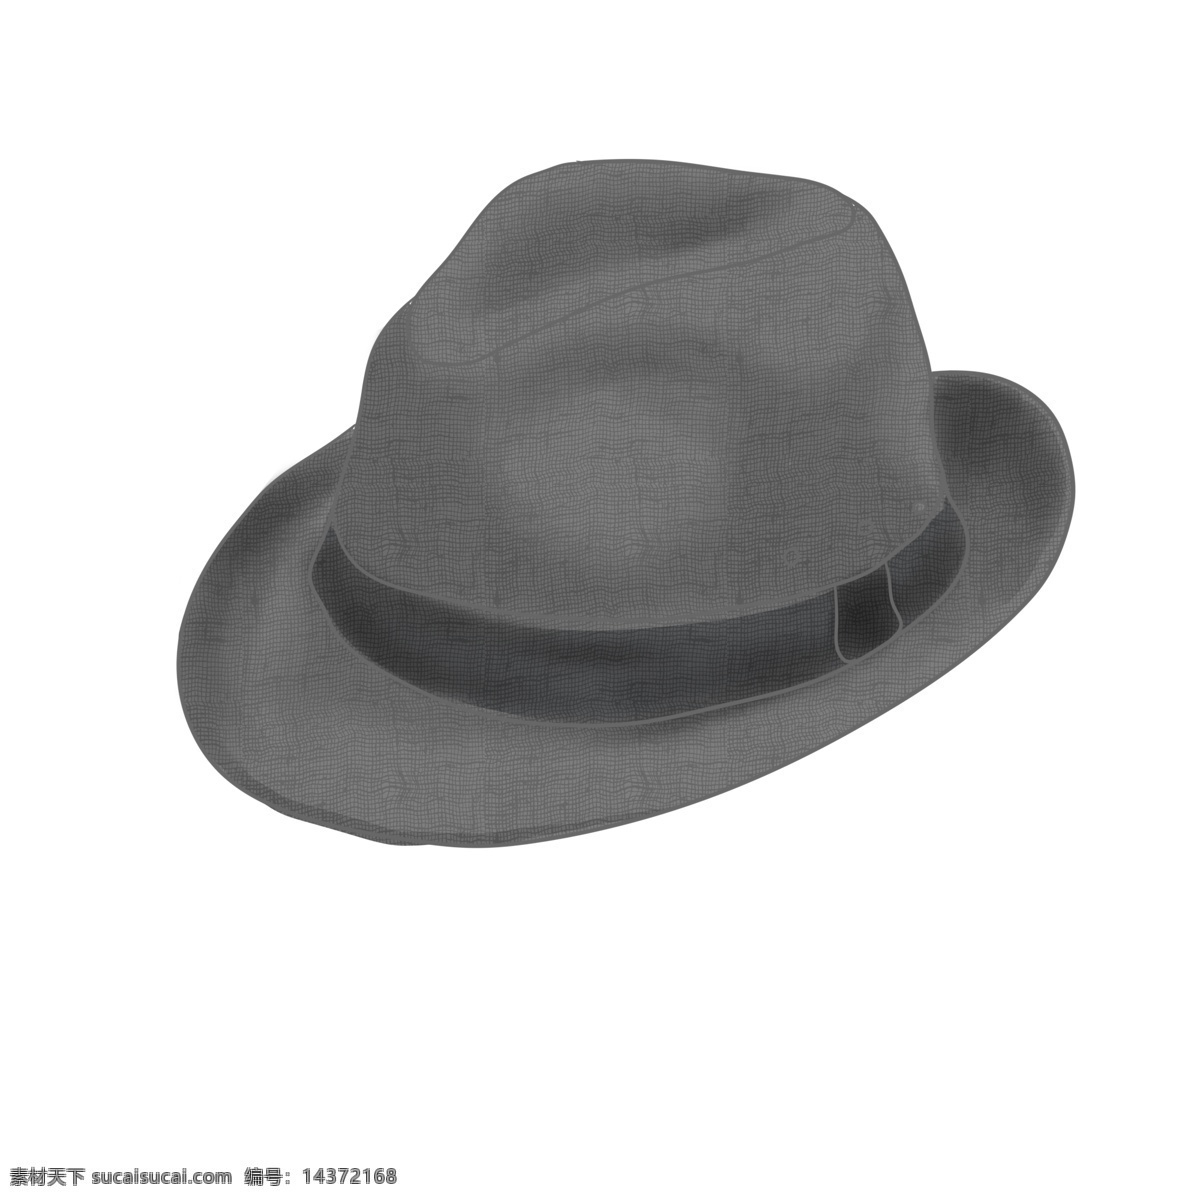 简单黑色帽子 简单 黑色 帽子 日常 饰品